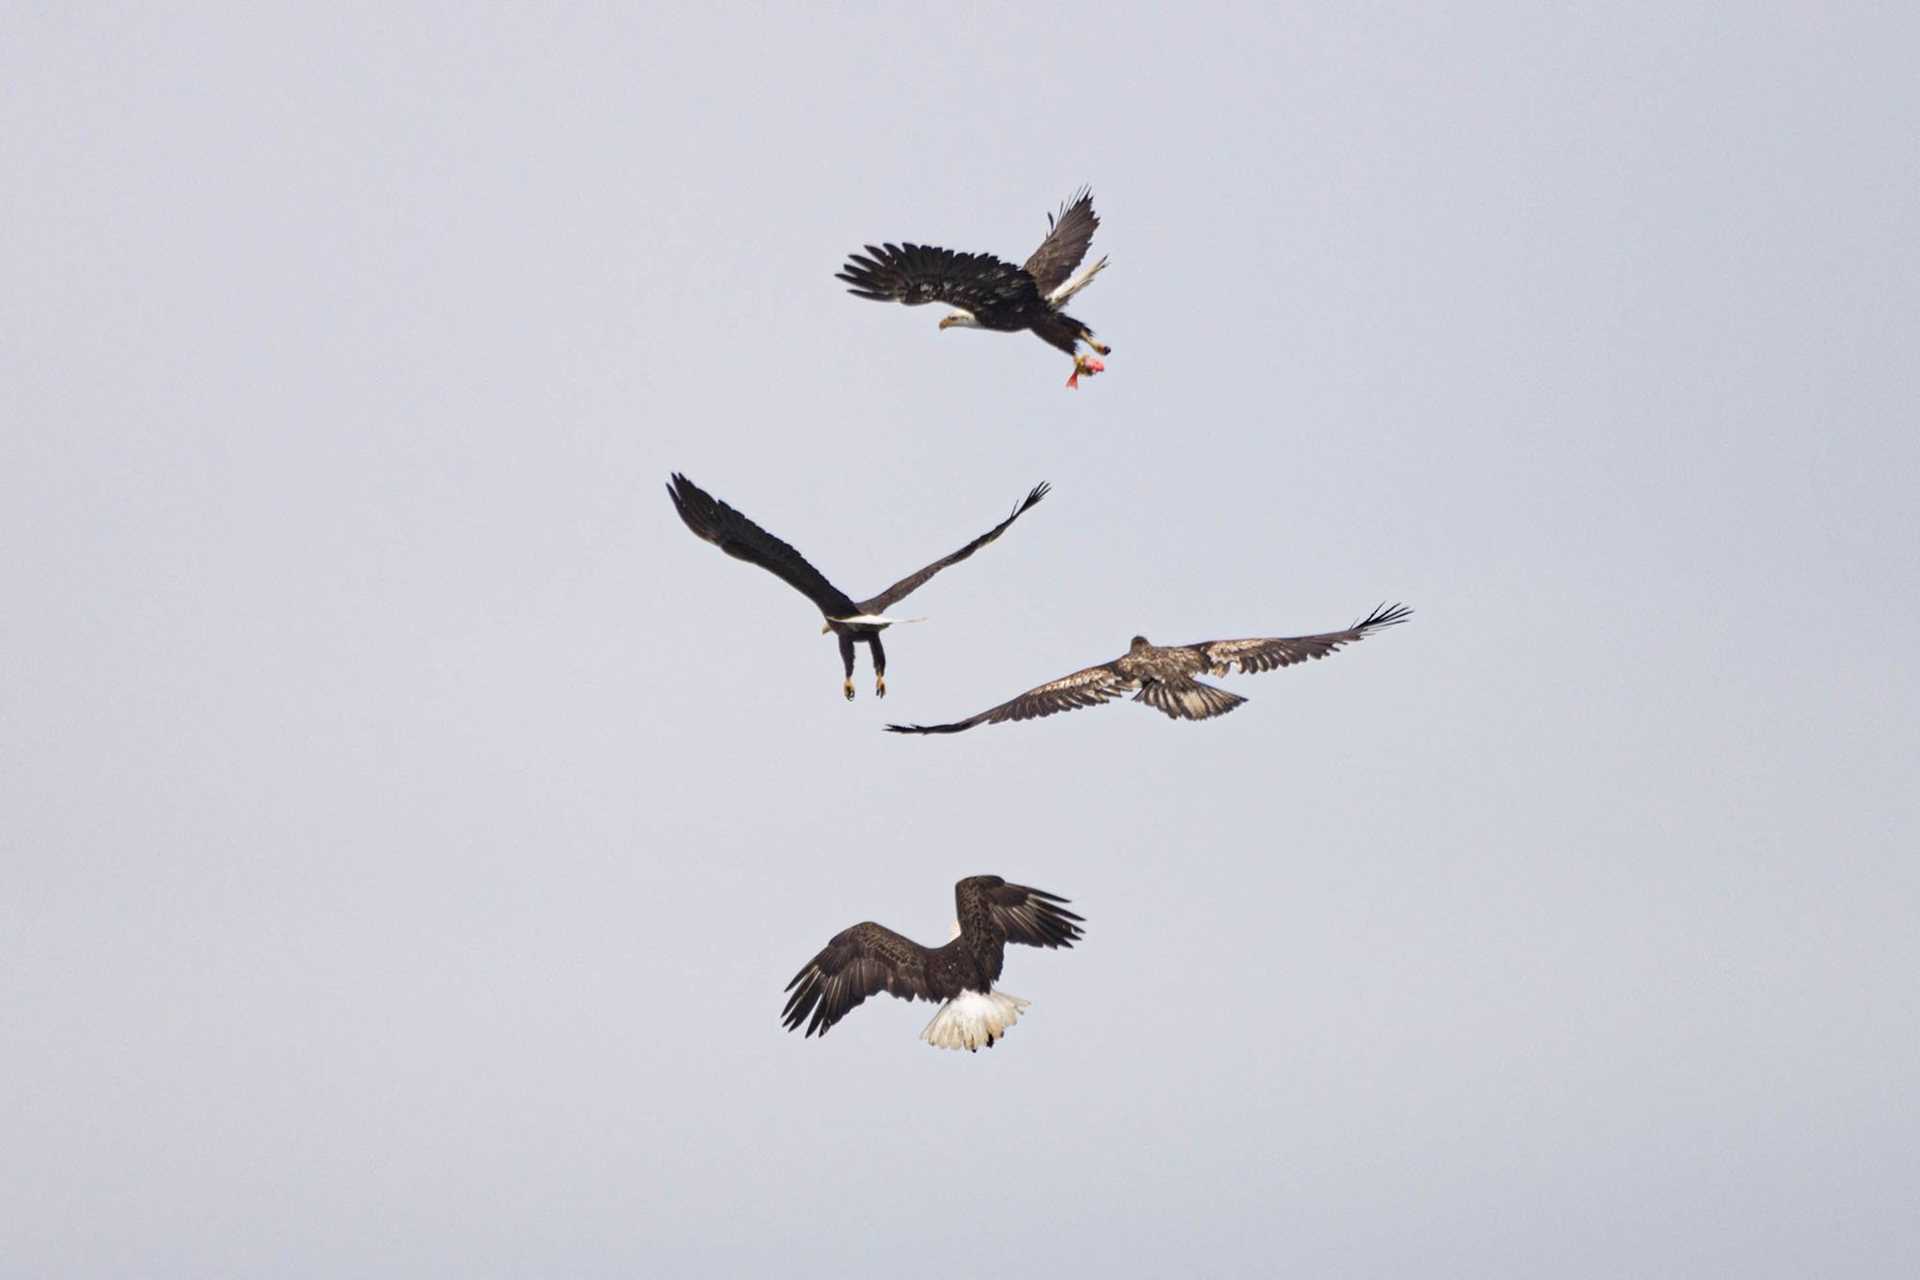 eagles fighting in midair